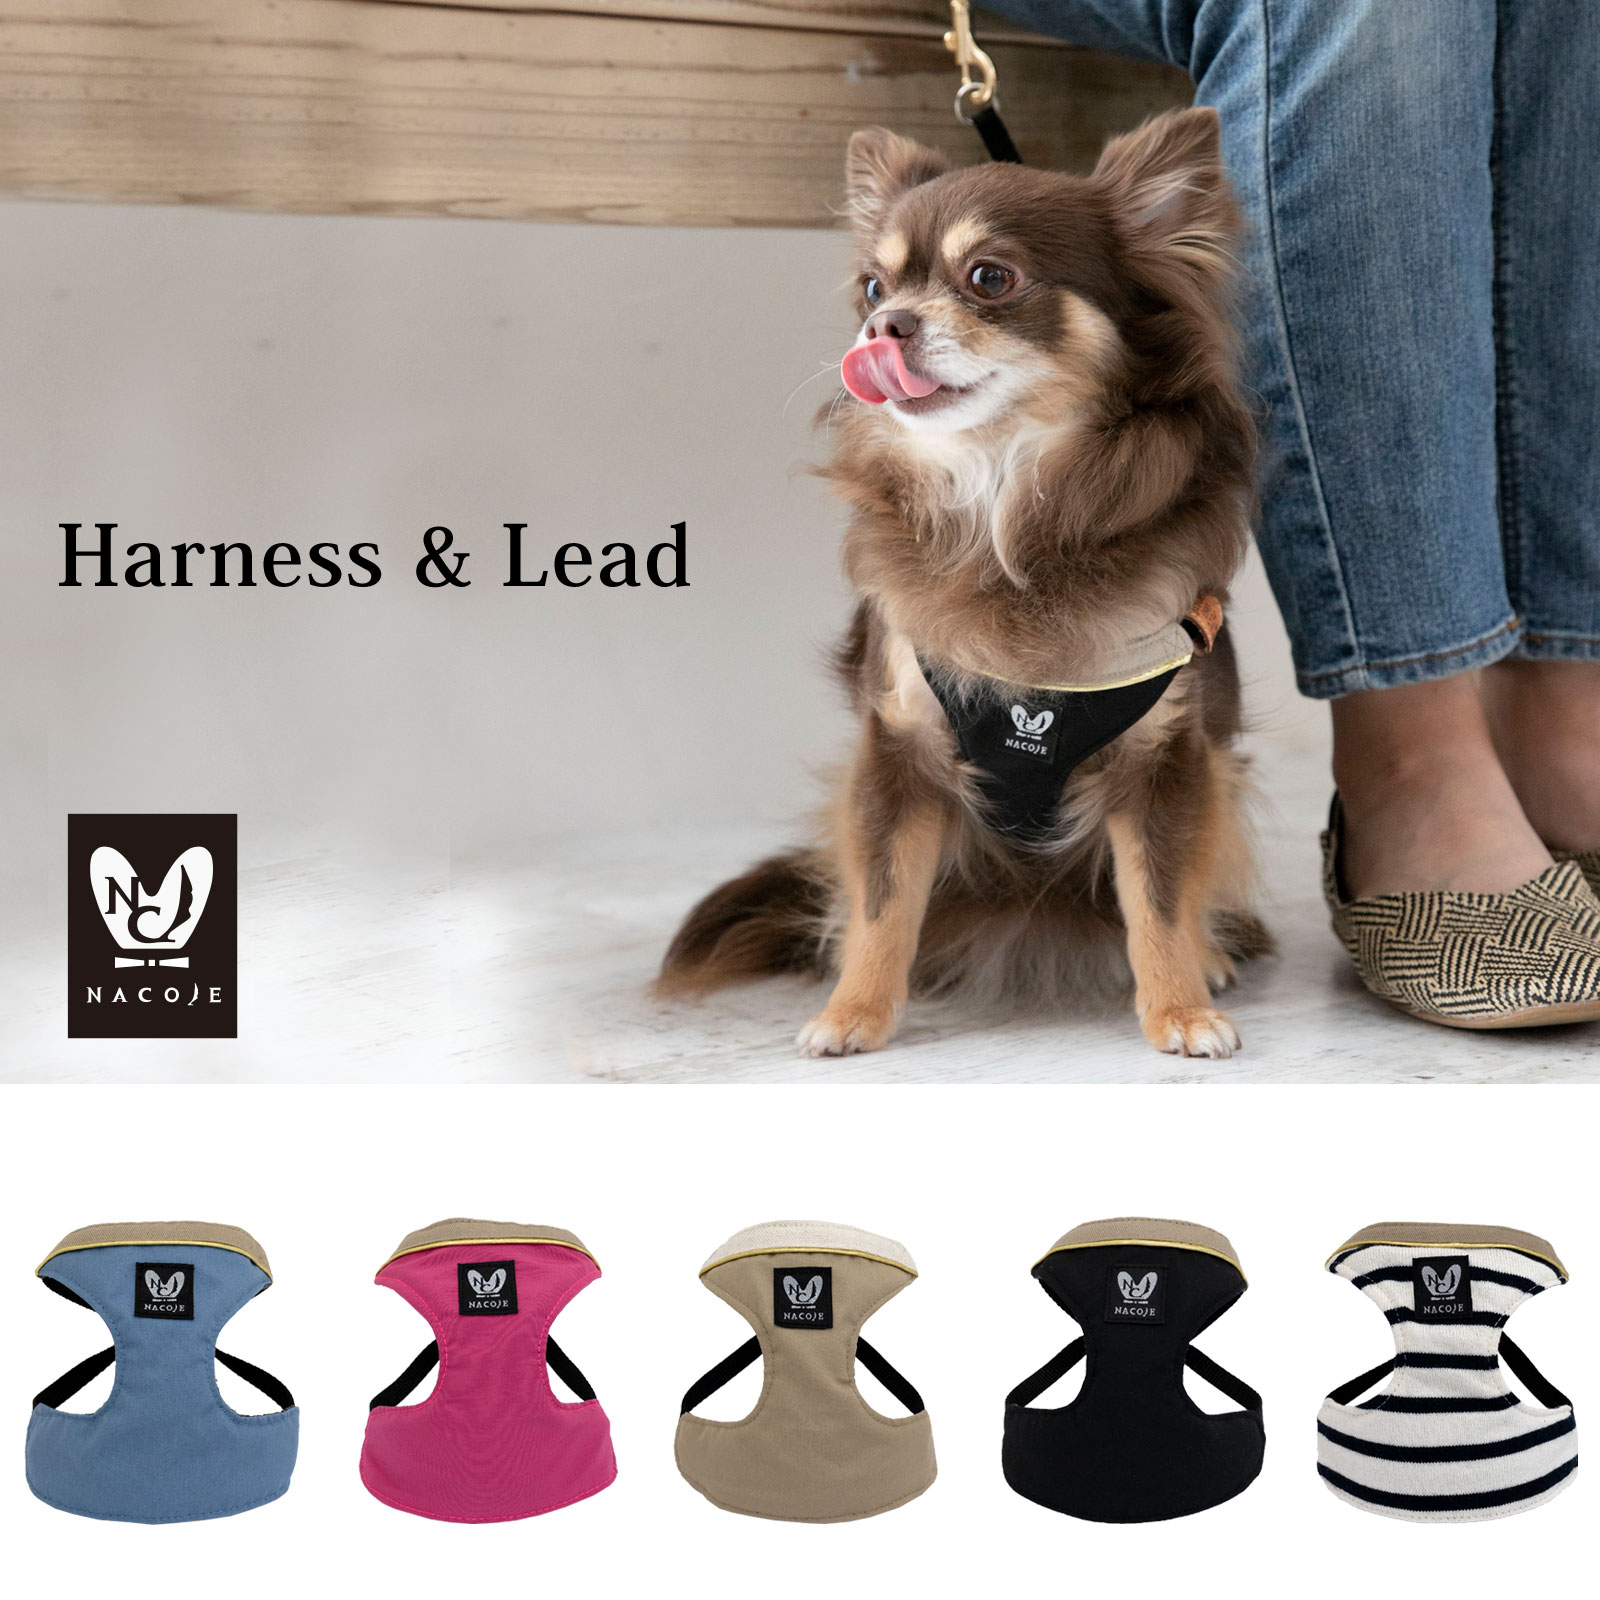 日本製 犬 犬用 ハーネス リードセット シンプル 上品 おしゃれ 犬具 胴輪 小型犬 お散歩 装着簡単 ファッションリード ハーネスリード かわいい  ネコポスOK nacole ナコル nhns